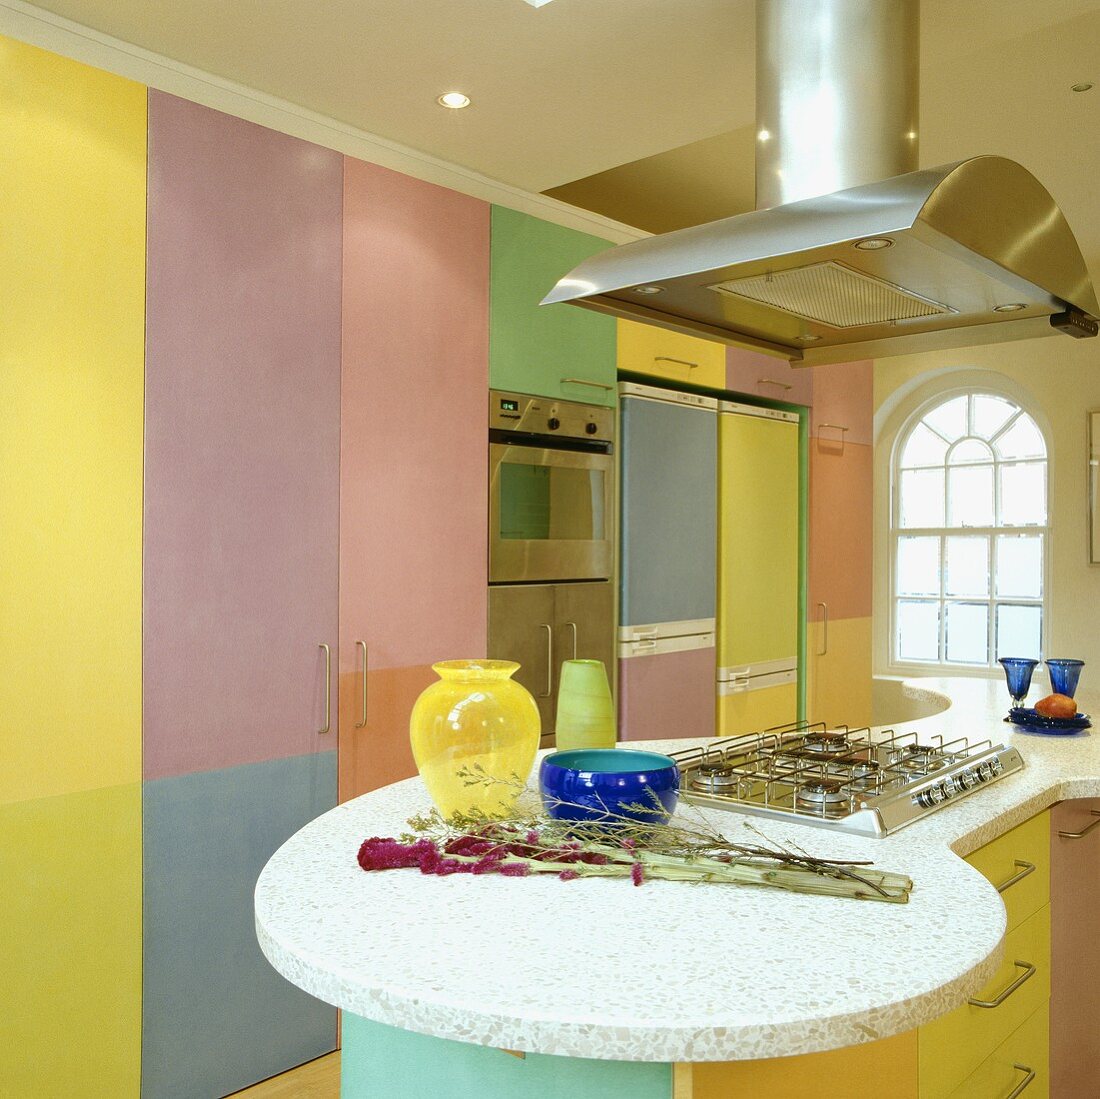 Edelstahl-Dunstabzug über einem Gasherd auf einem Halbinselelement mit Marmorplatte in einer bunten pastellfarbenen Küche